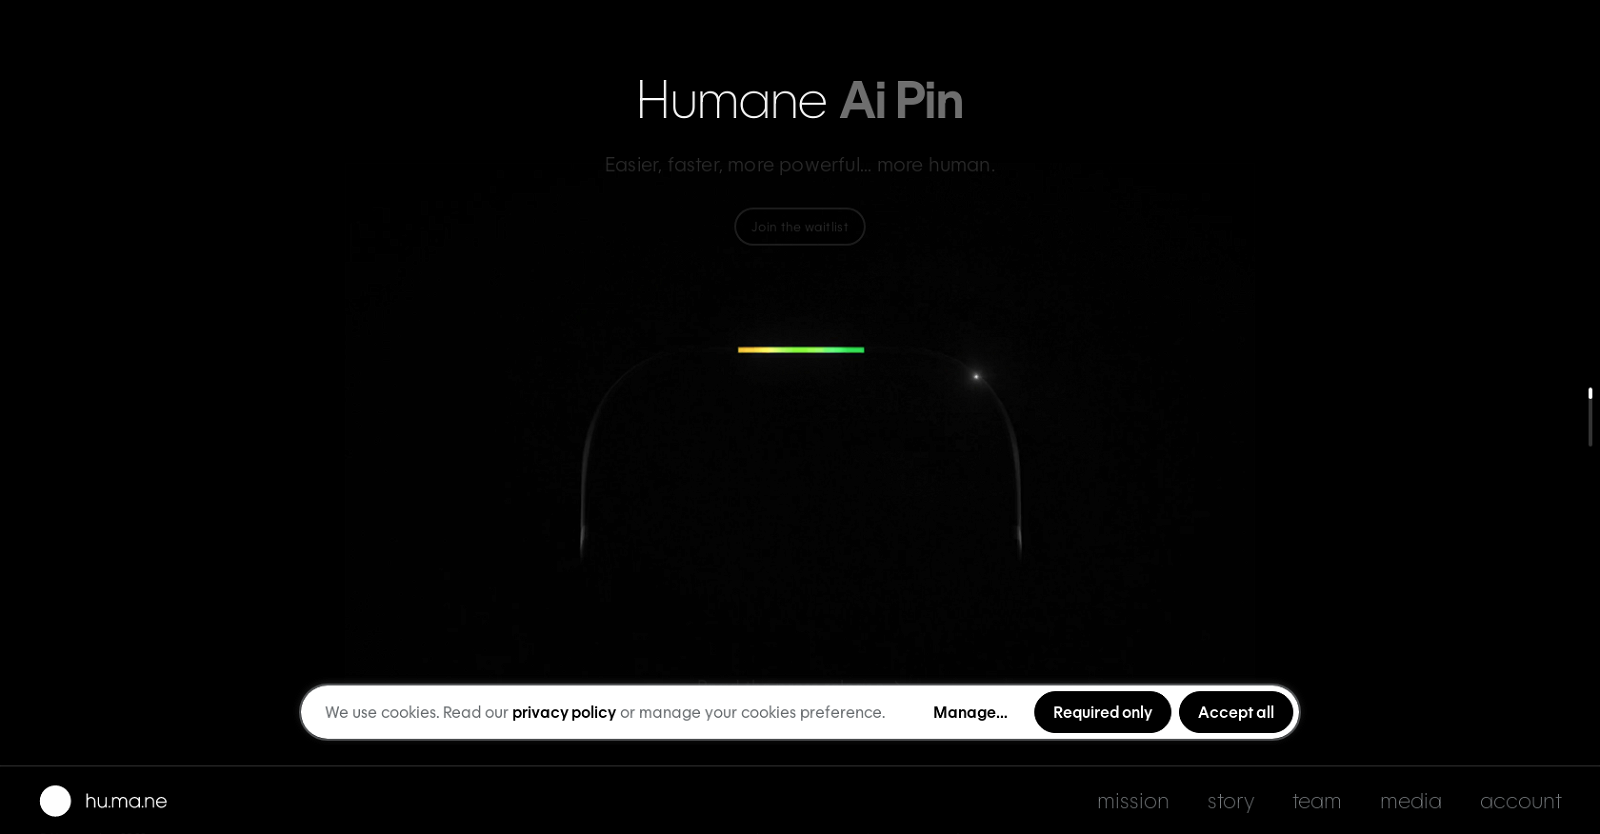 Humane AI pin website